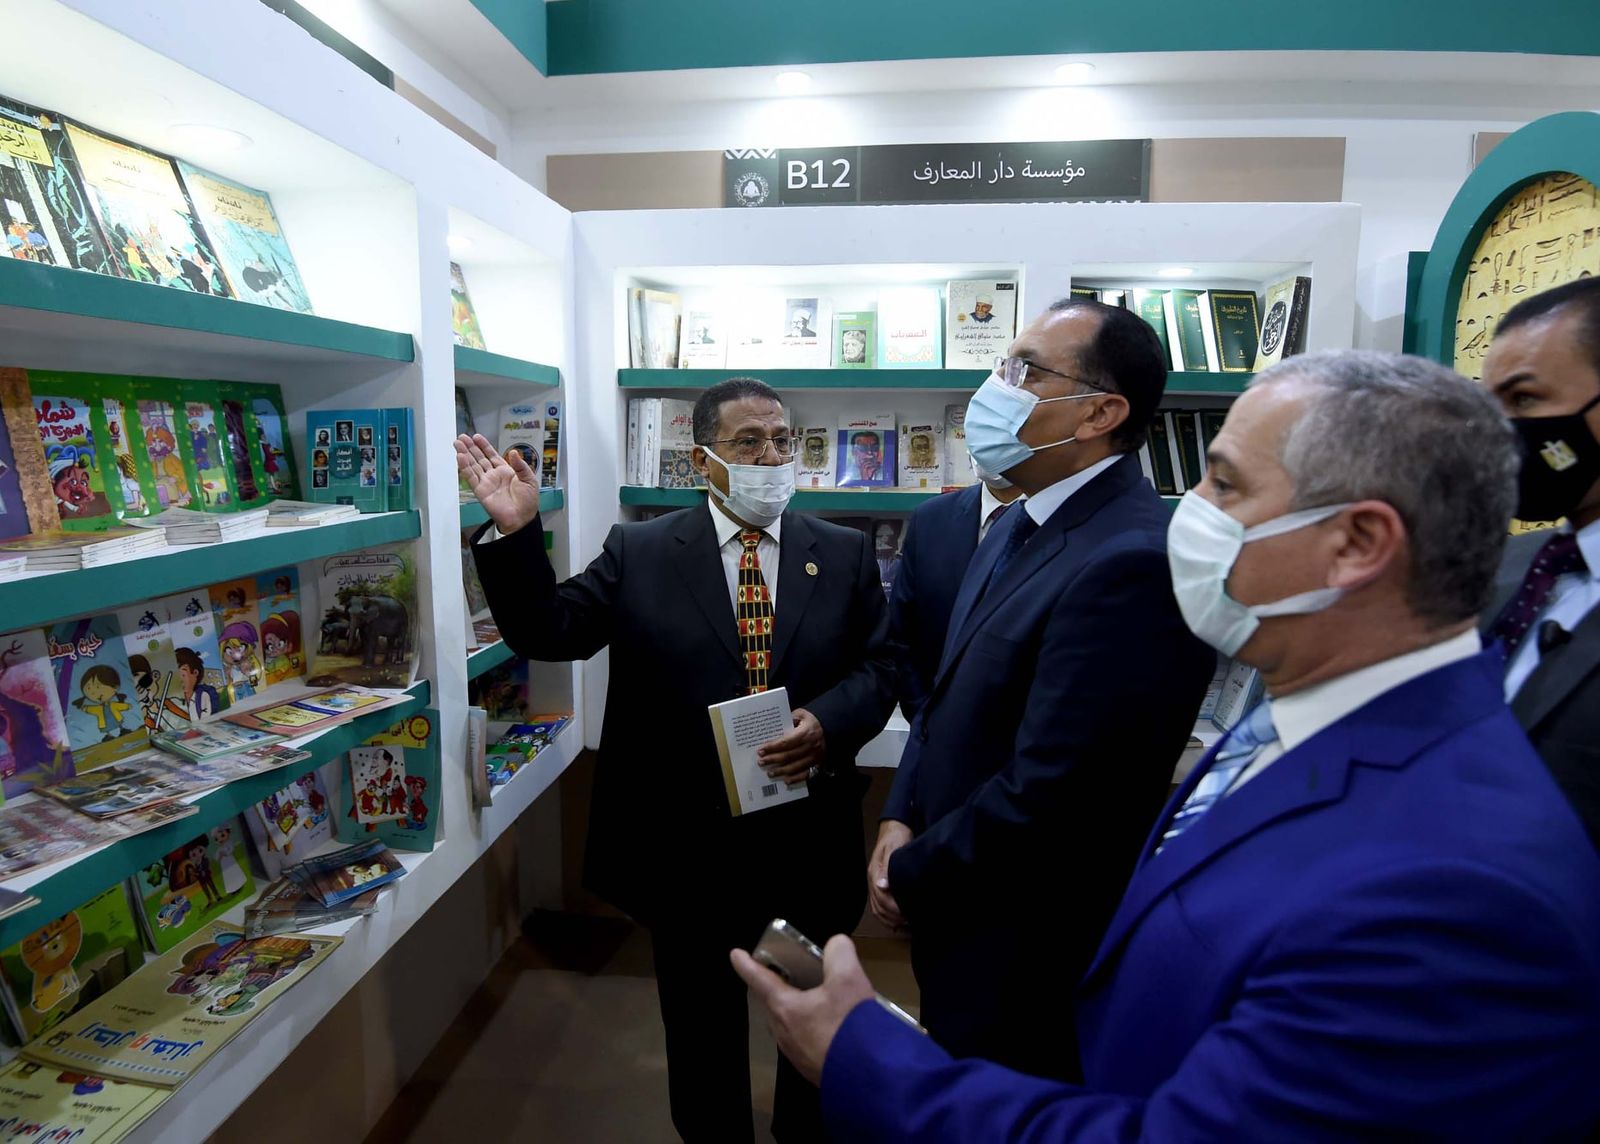 رئيس الوزراء المصري، مصطفى مدبولي، يتفقد أجنحة معرض القاهرة للكتاب - Facebook/@SuezCanalAuthorityEG